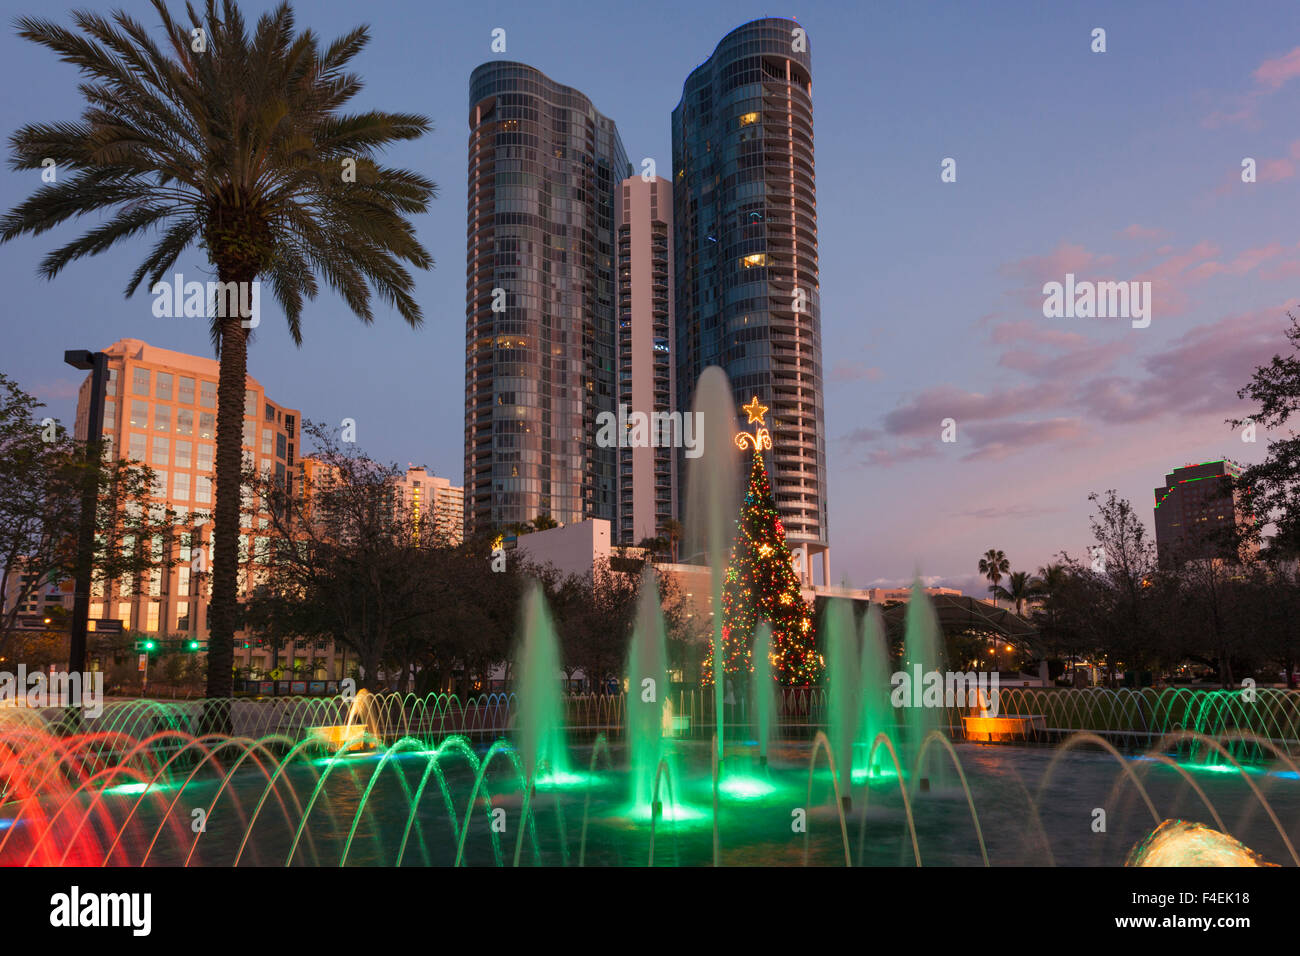 USA, Florida, Fort Lauderdale, Las Olas River Haus Eigentumswohnung Gebäude, Las Olas Riverwalk Bereich mit Heyne Park Brunnen am Abend. Stockfoto